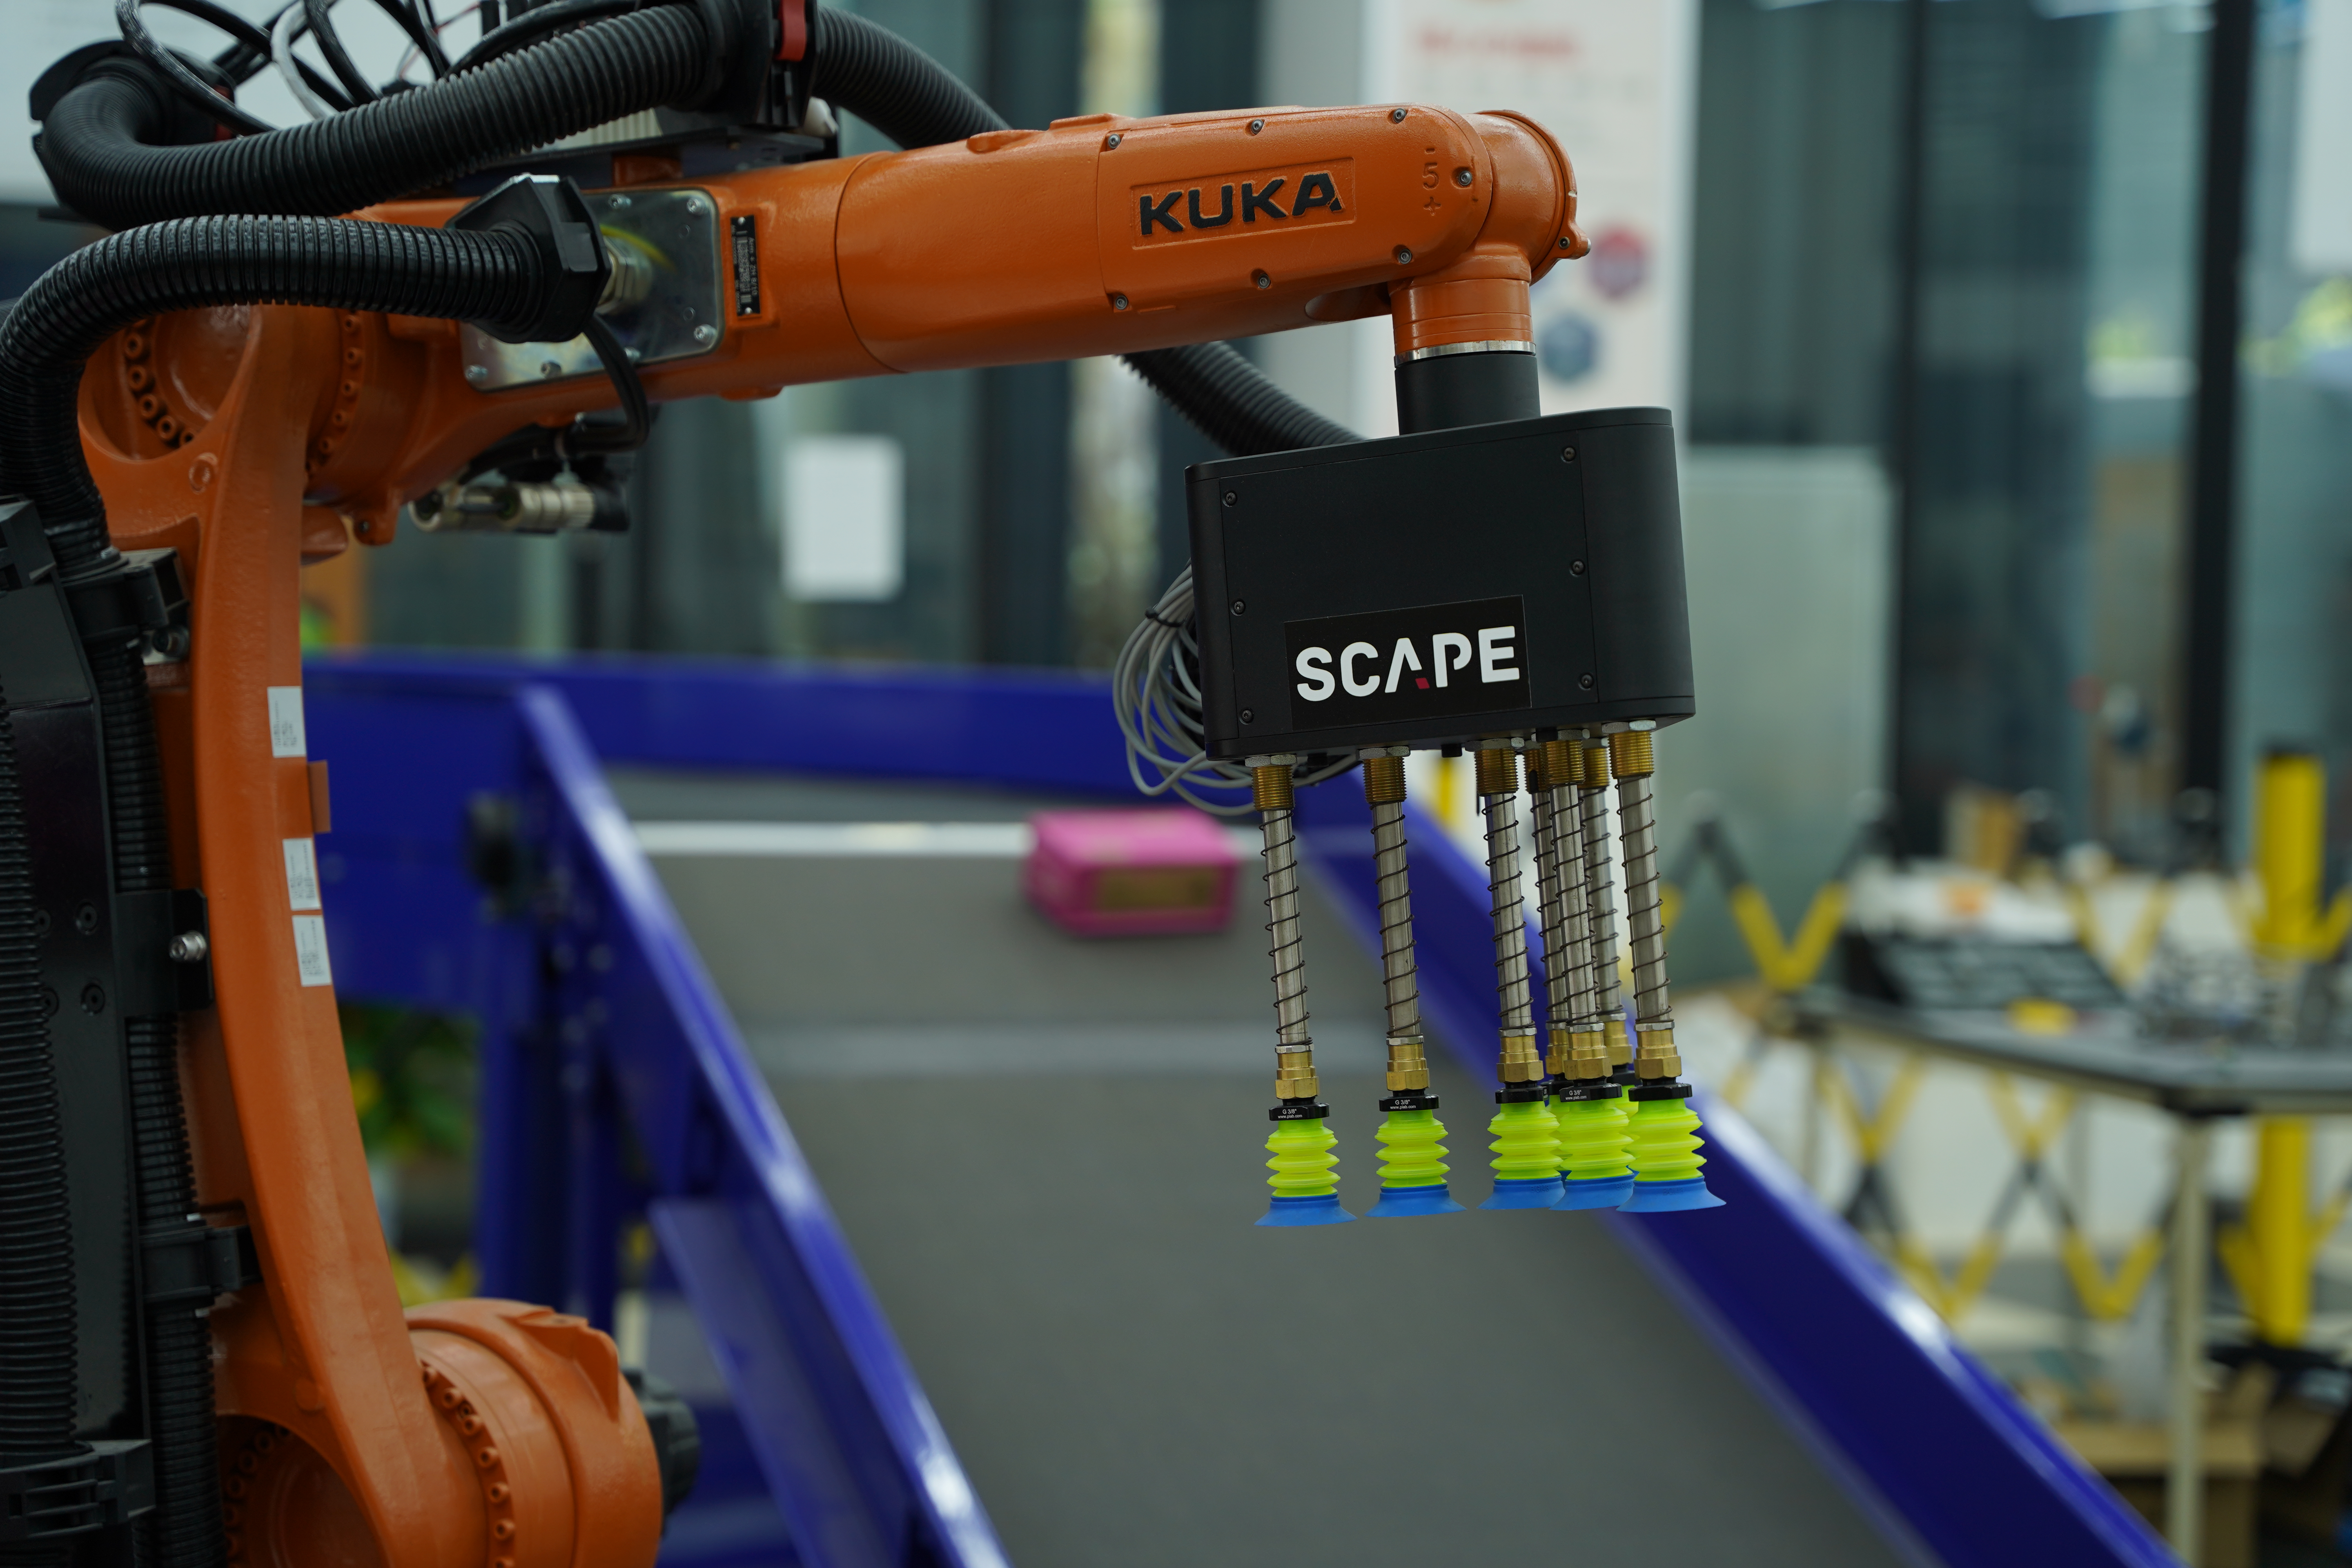  SCAPE Package Picker-Lösung für die automatische Handhabung von Paketen, integriert in einen KUKA-Roboter